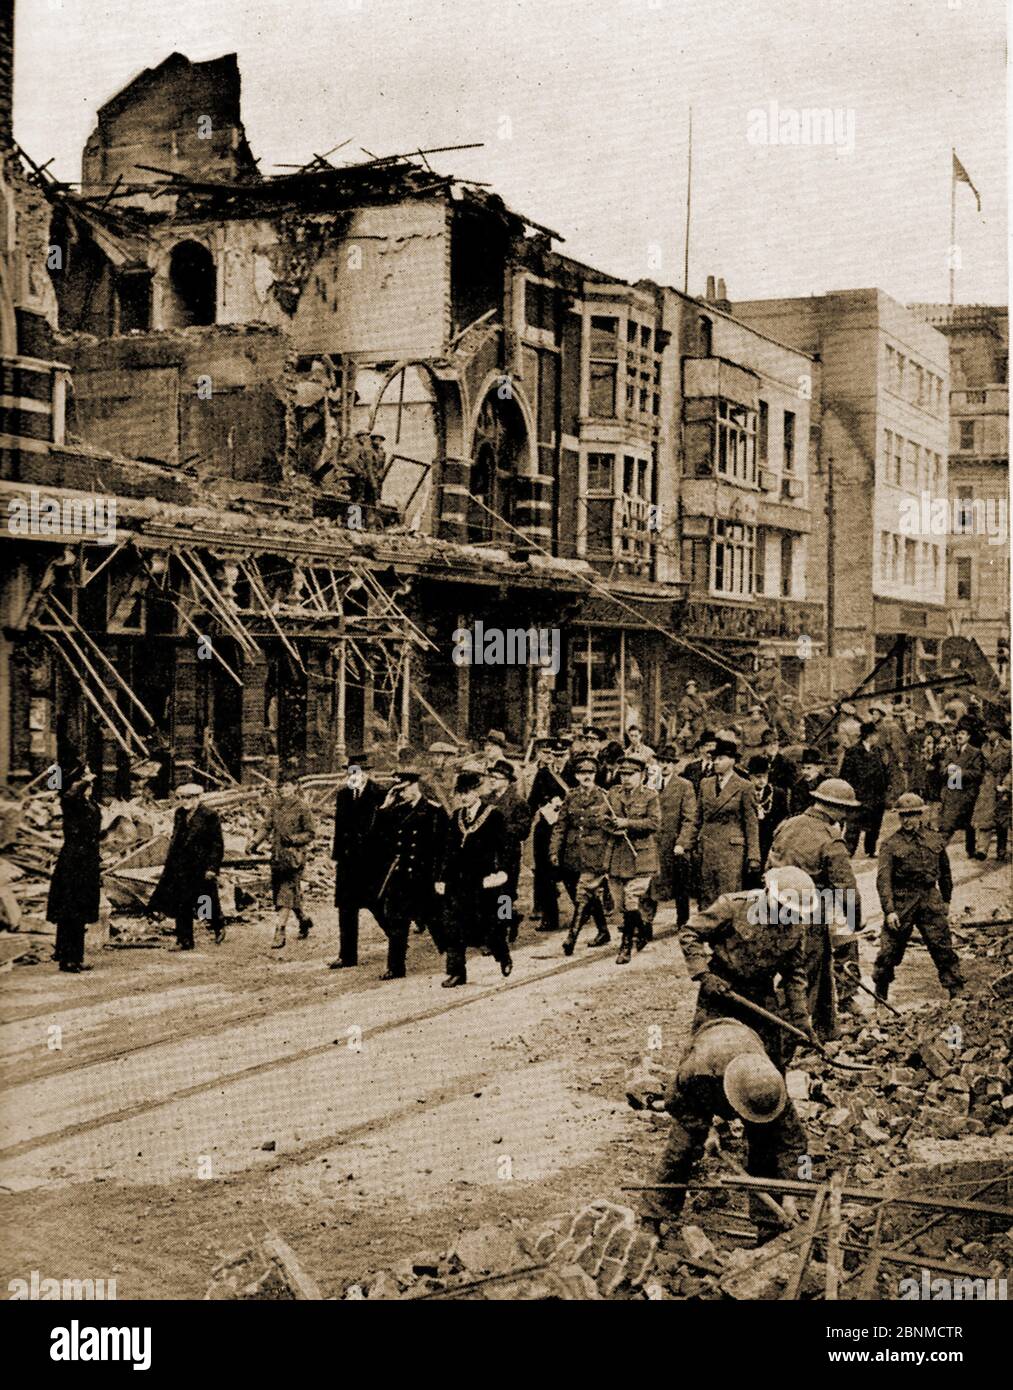 WWII - EIN gedrucktes Bild von 1941, das den Zweiten Weltkrieg zeigt, wie König George Southampton, England nach dem großen Bombenangriff vom 30. November 1940 besucht, während Truppen weiterhin die Straßen von Schutt und Asche räumen. Stockfoto